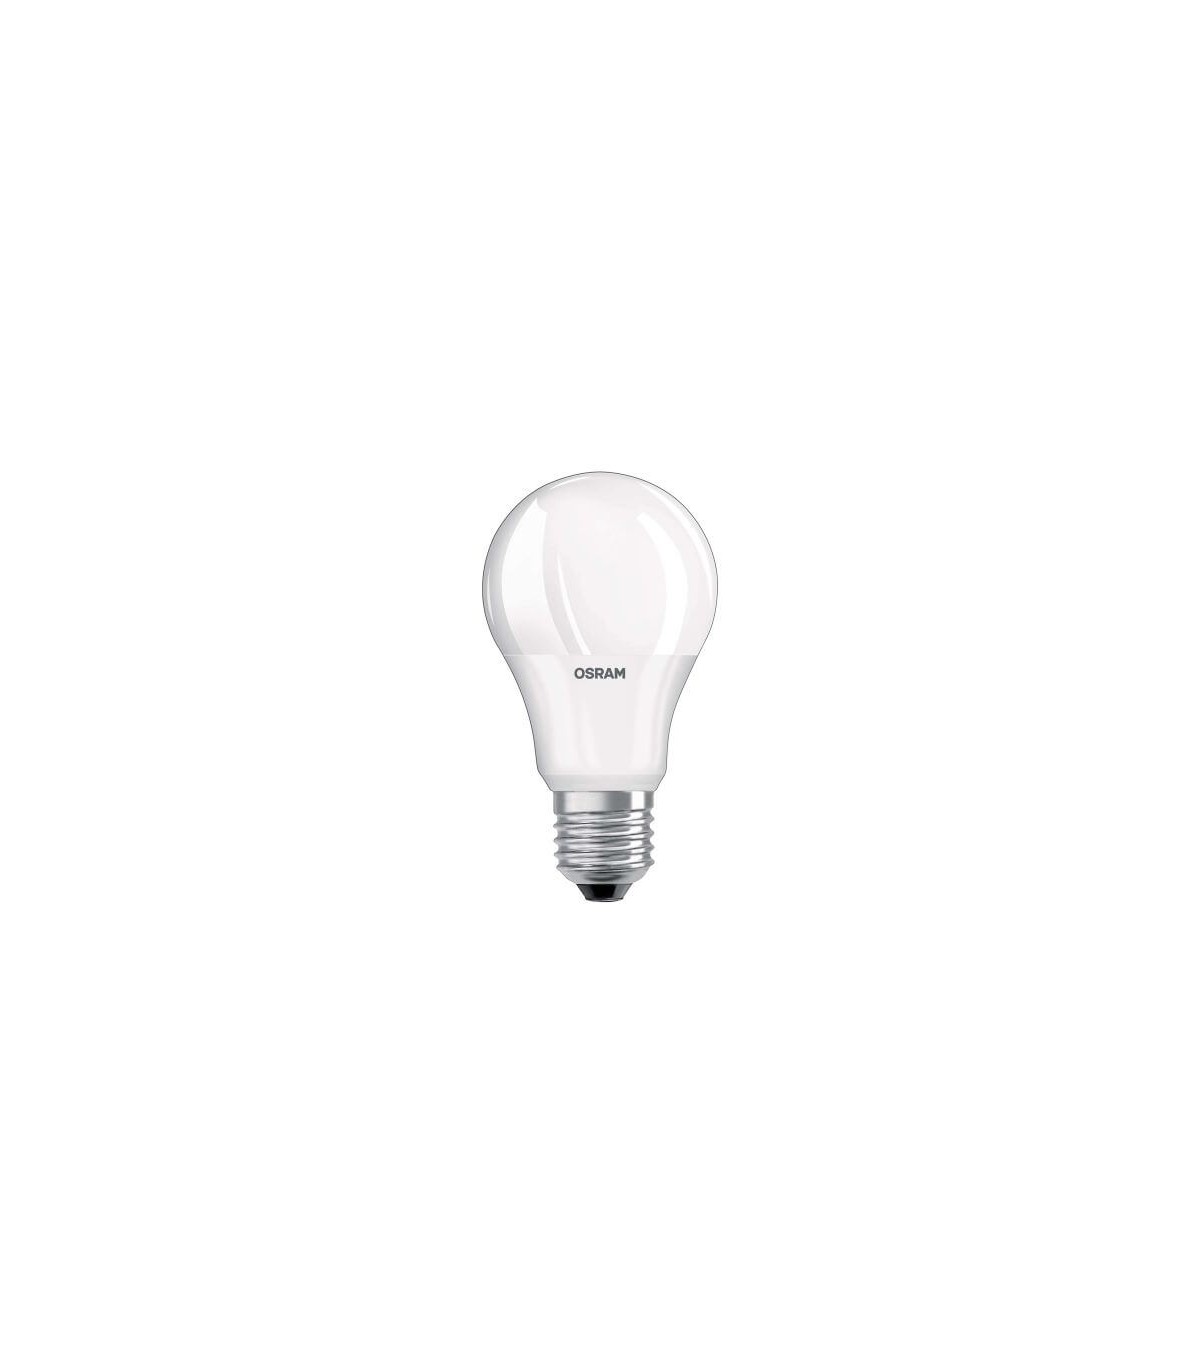 Ampoule LED cla d 12-100w a67 e27 lampe 827 cl